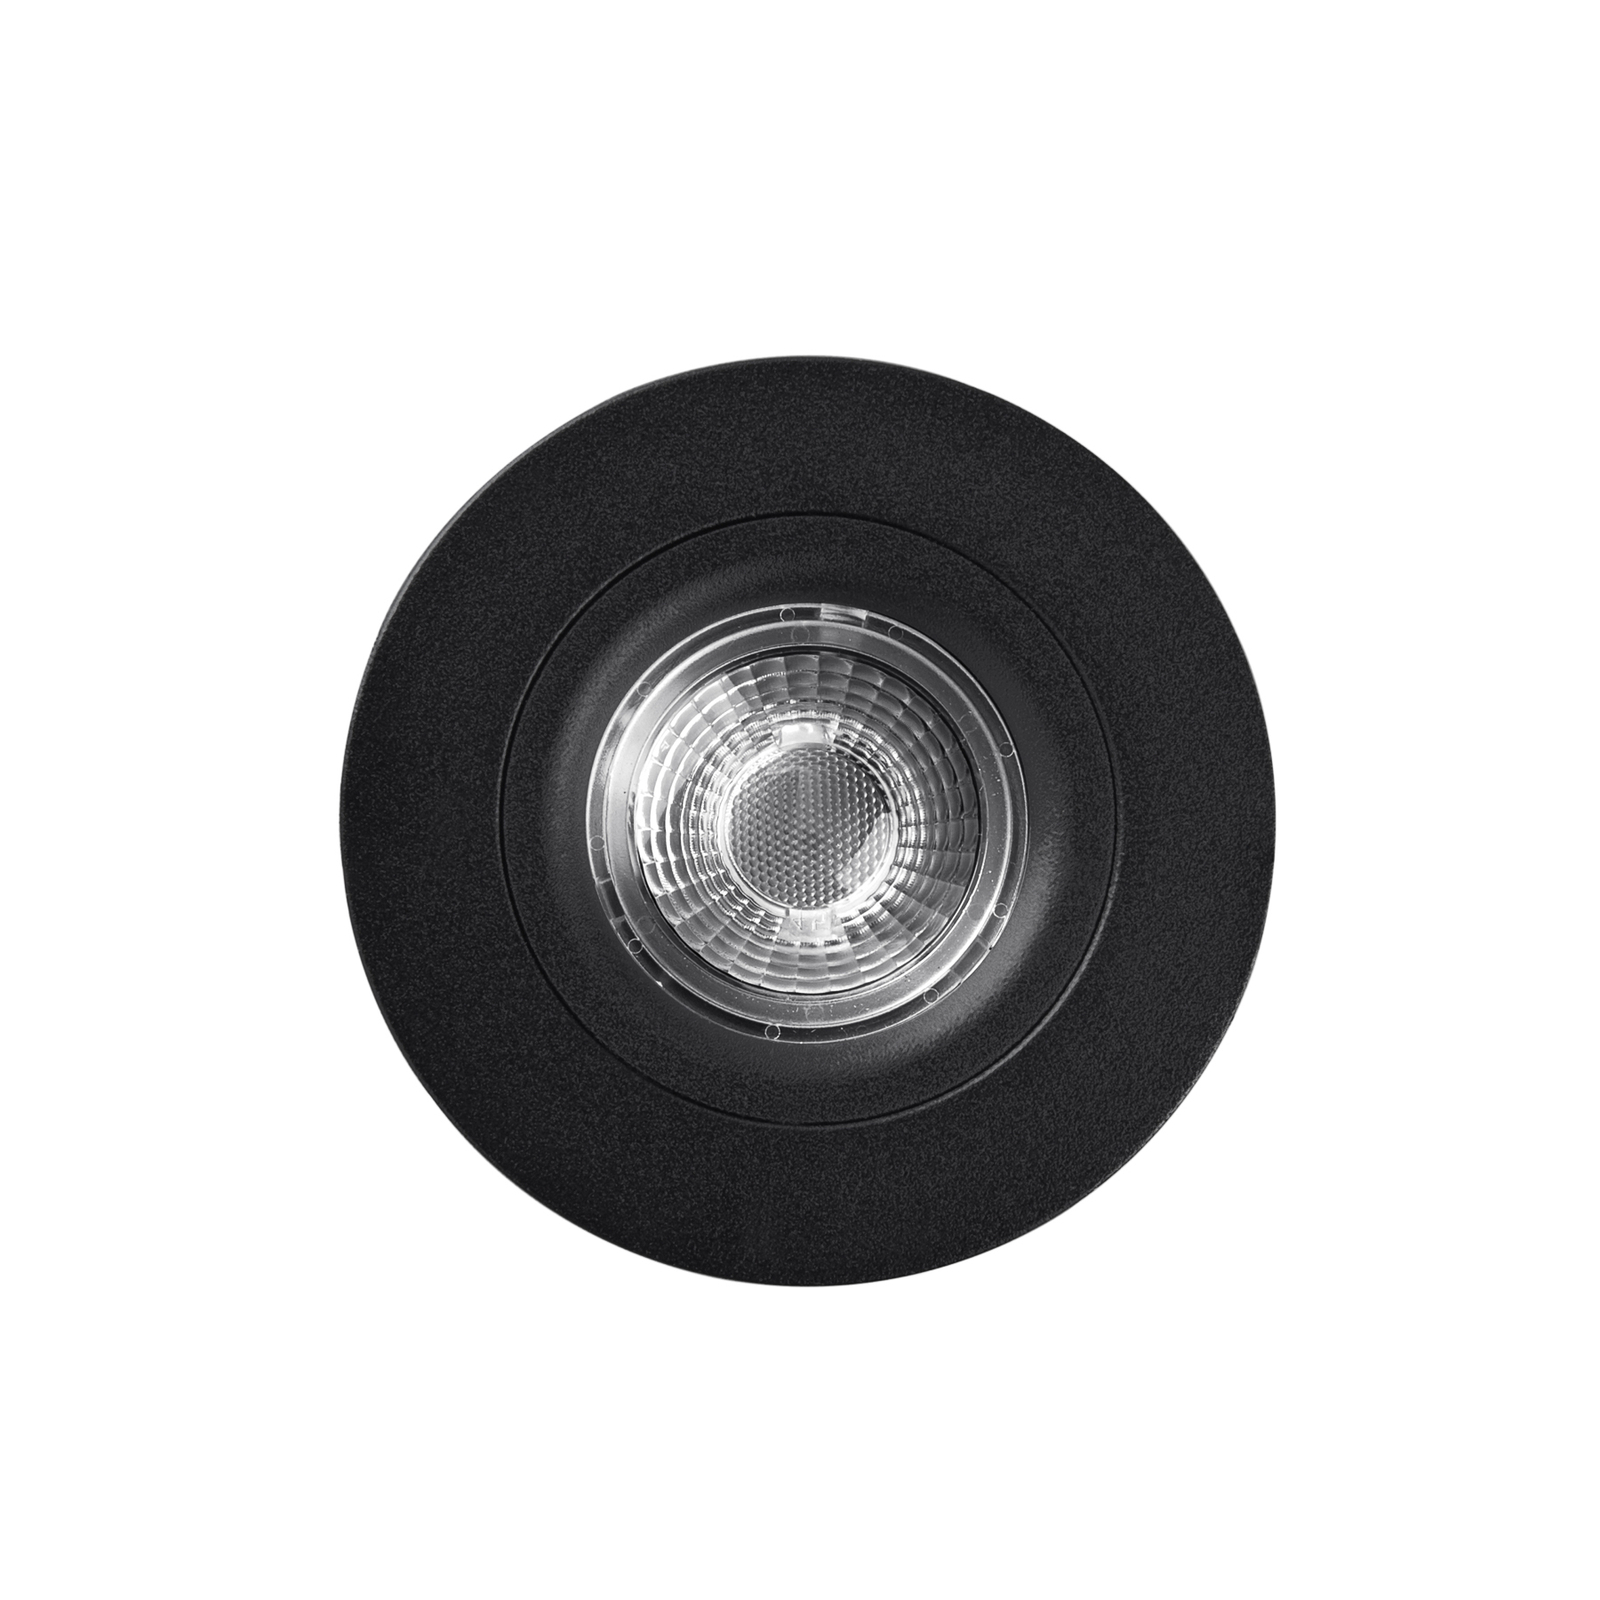 LED-Deckeneinbaustrahler DL6809, rund, schwarz